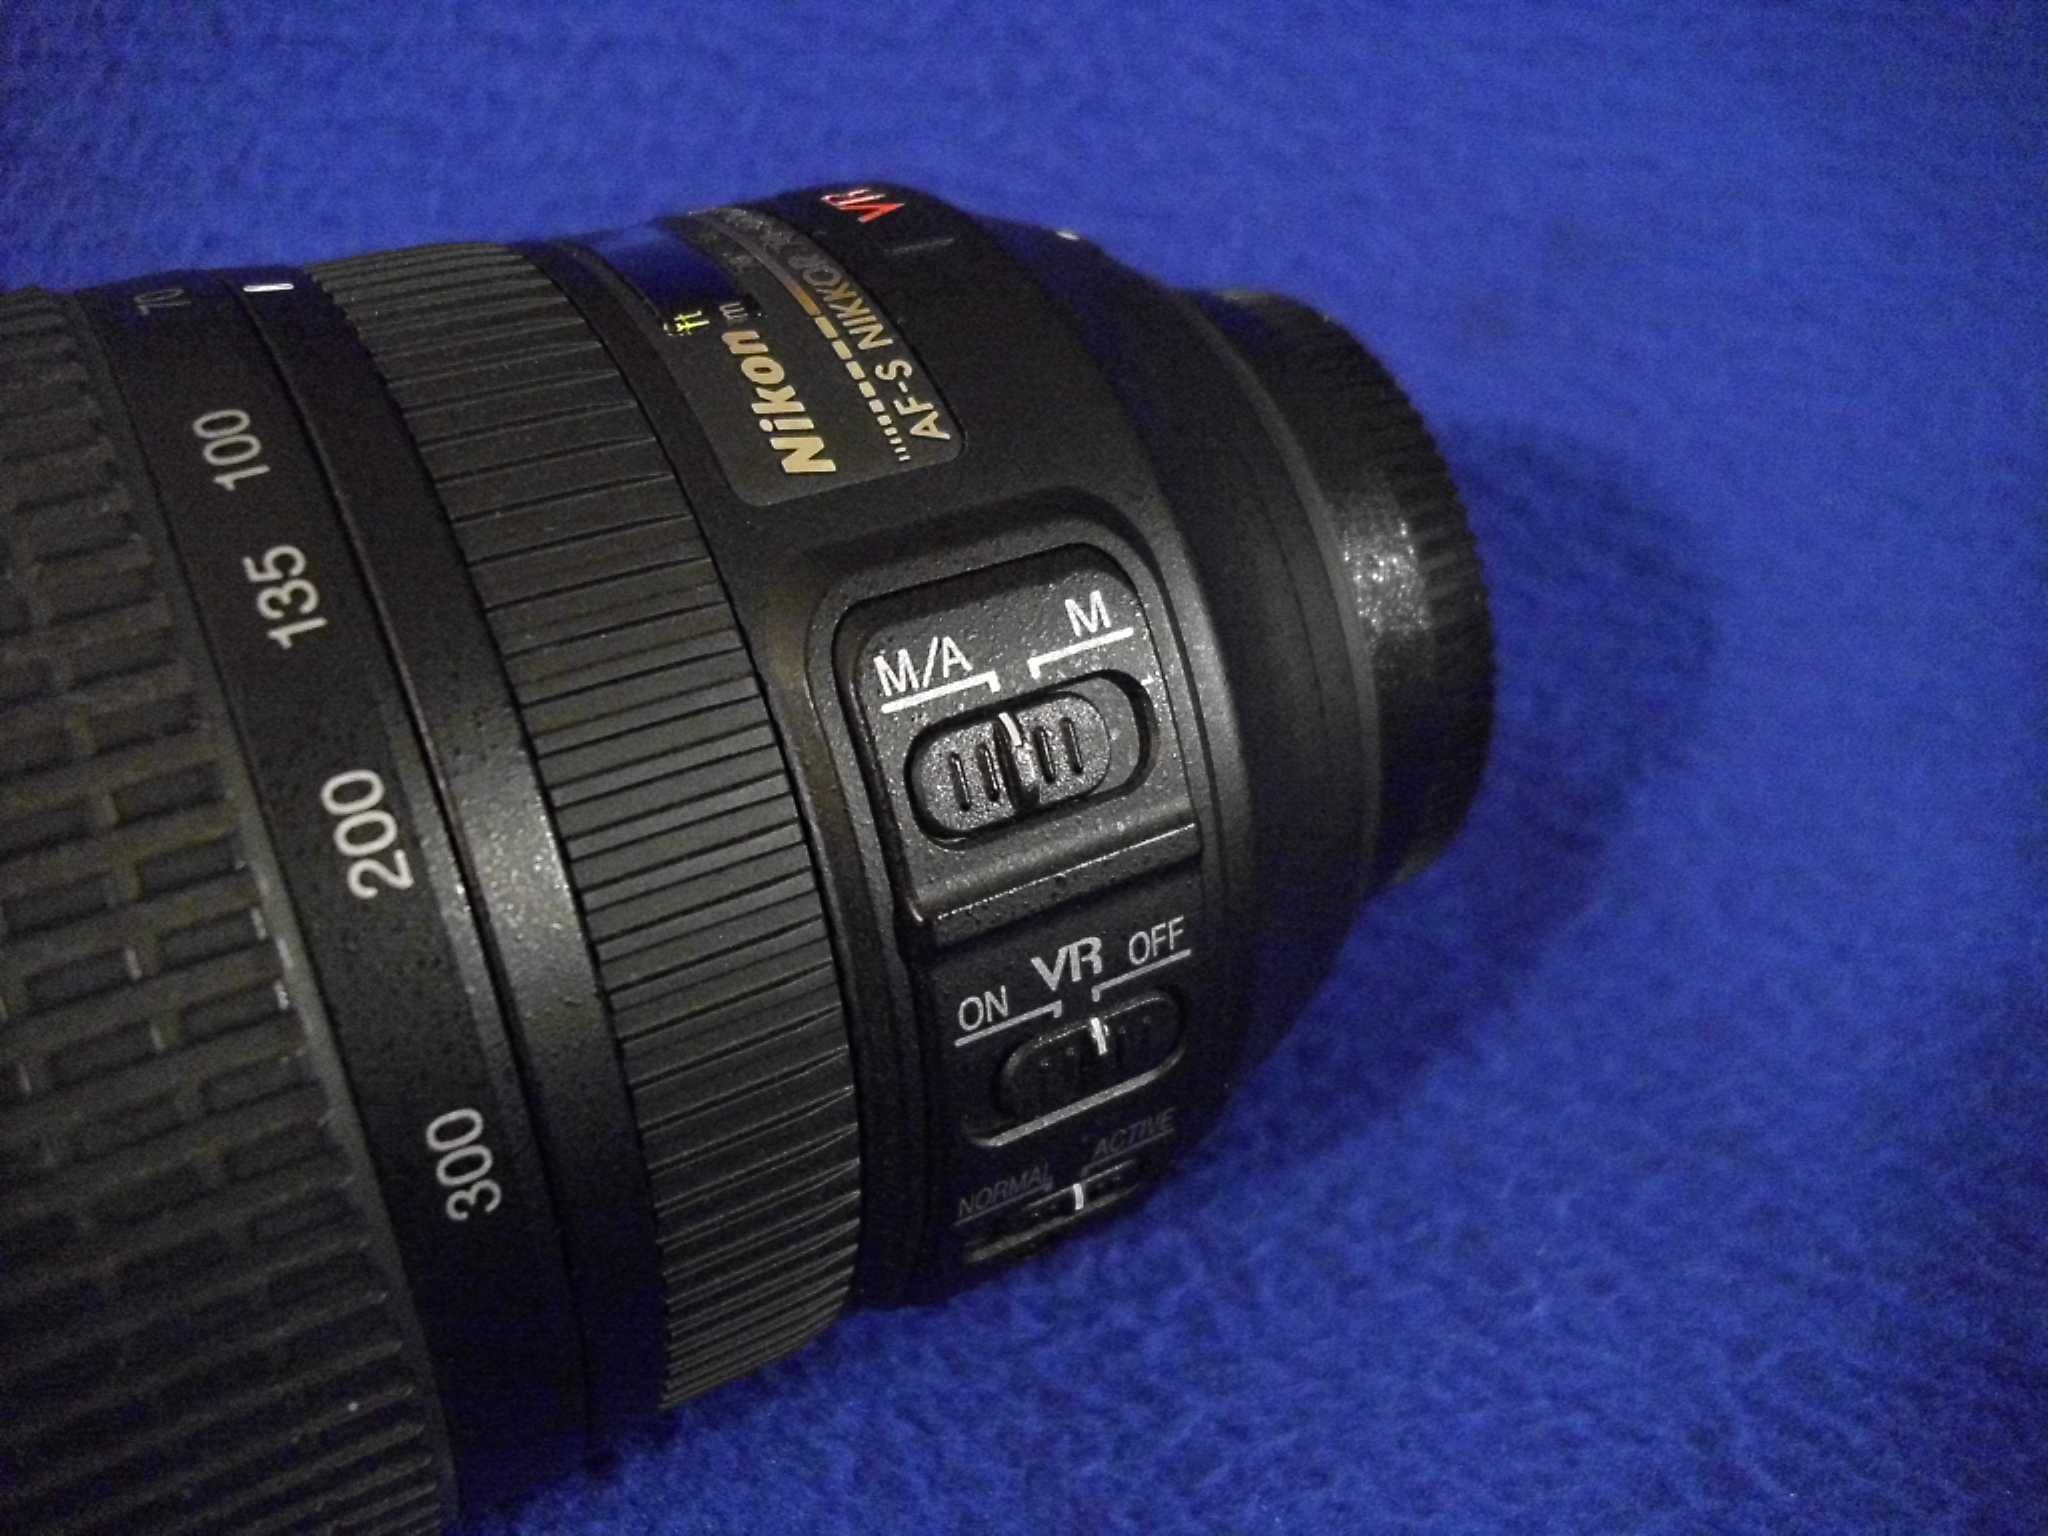 Nikon Nikkor AF-S 70-300 mm f/4.5-5.6G IF-ED VR